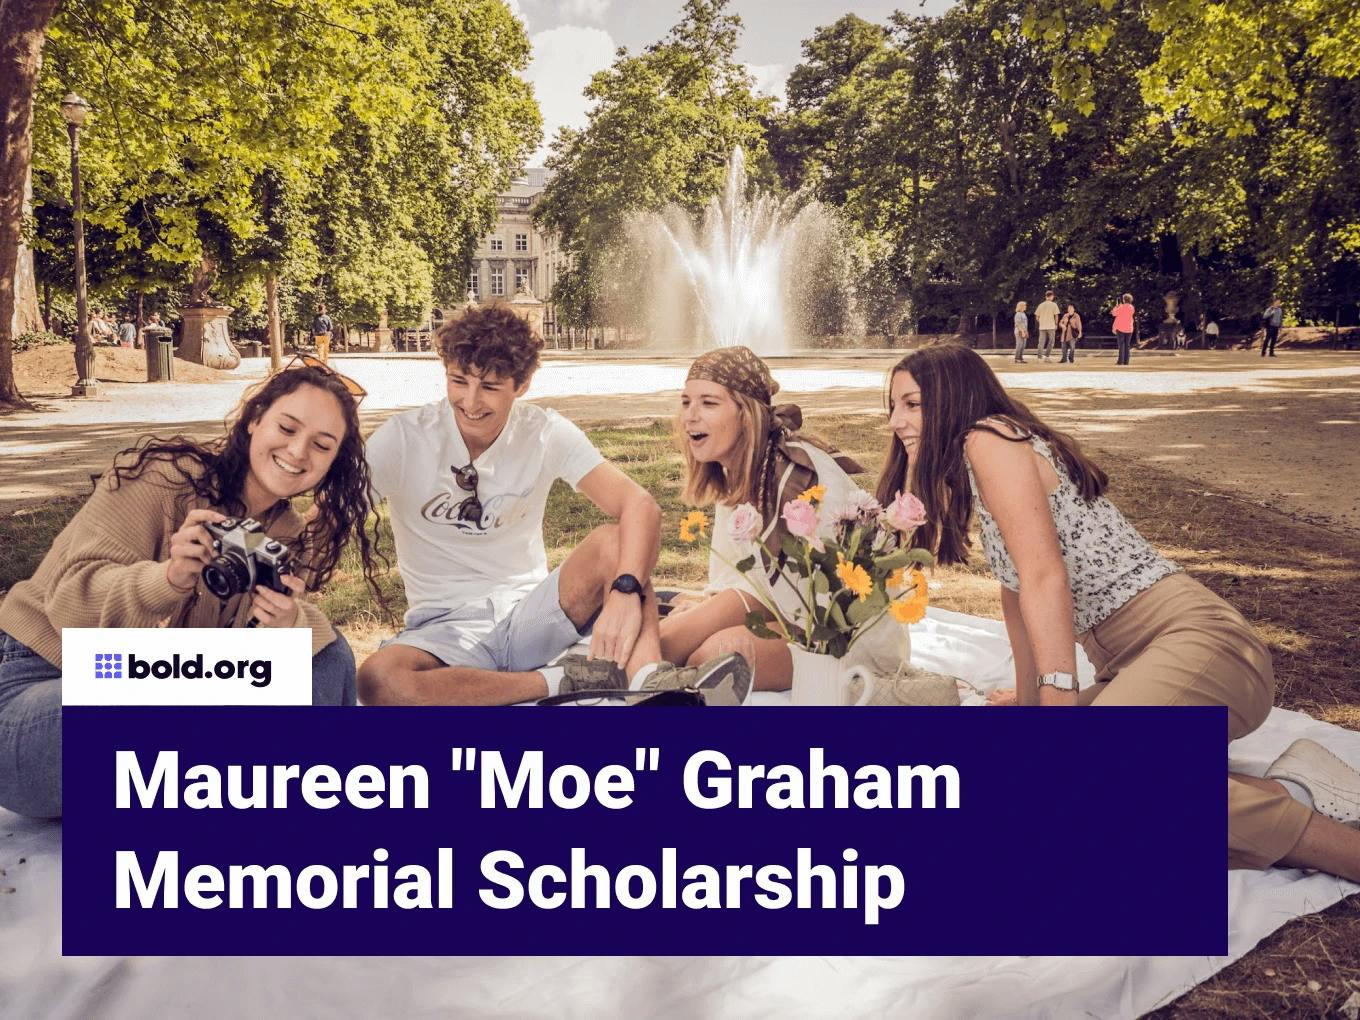 Maureen "Moe" Graham Memorial Scholarship